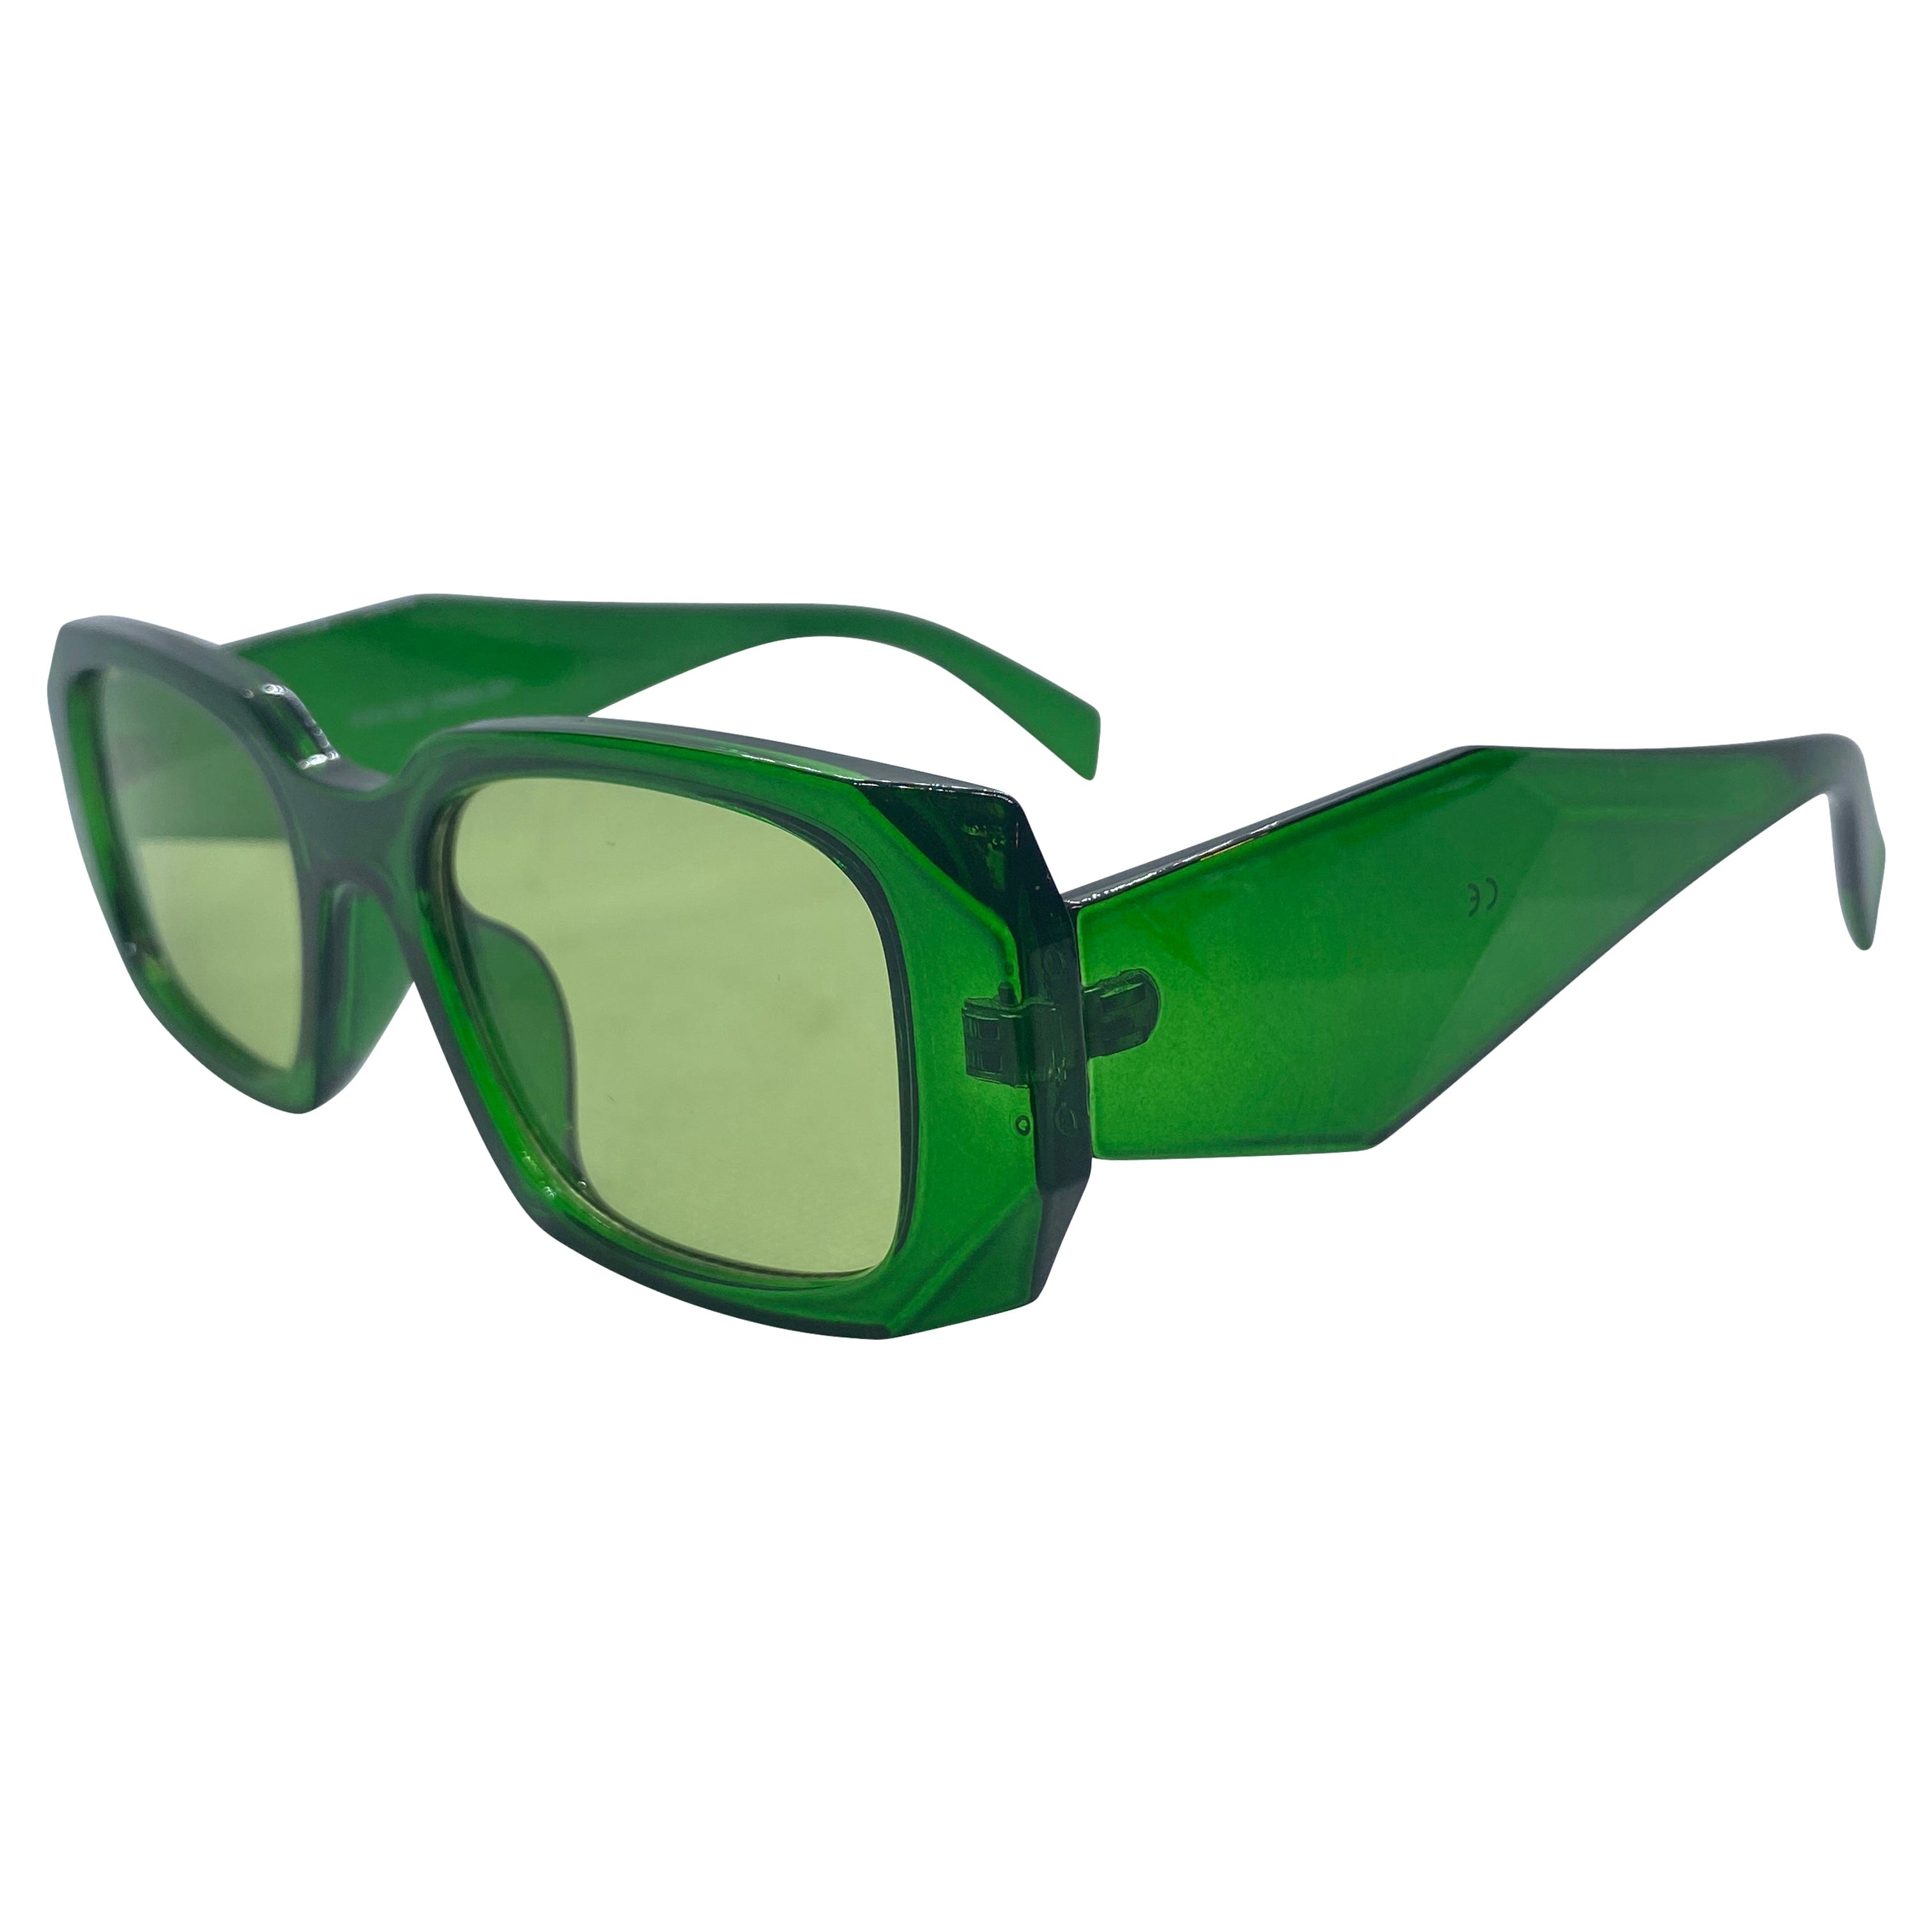 KNIGHT Green/Green Square Sunglasses